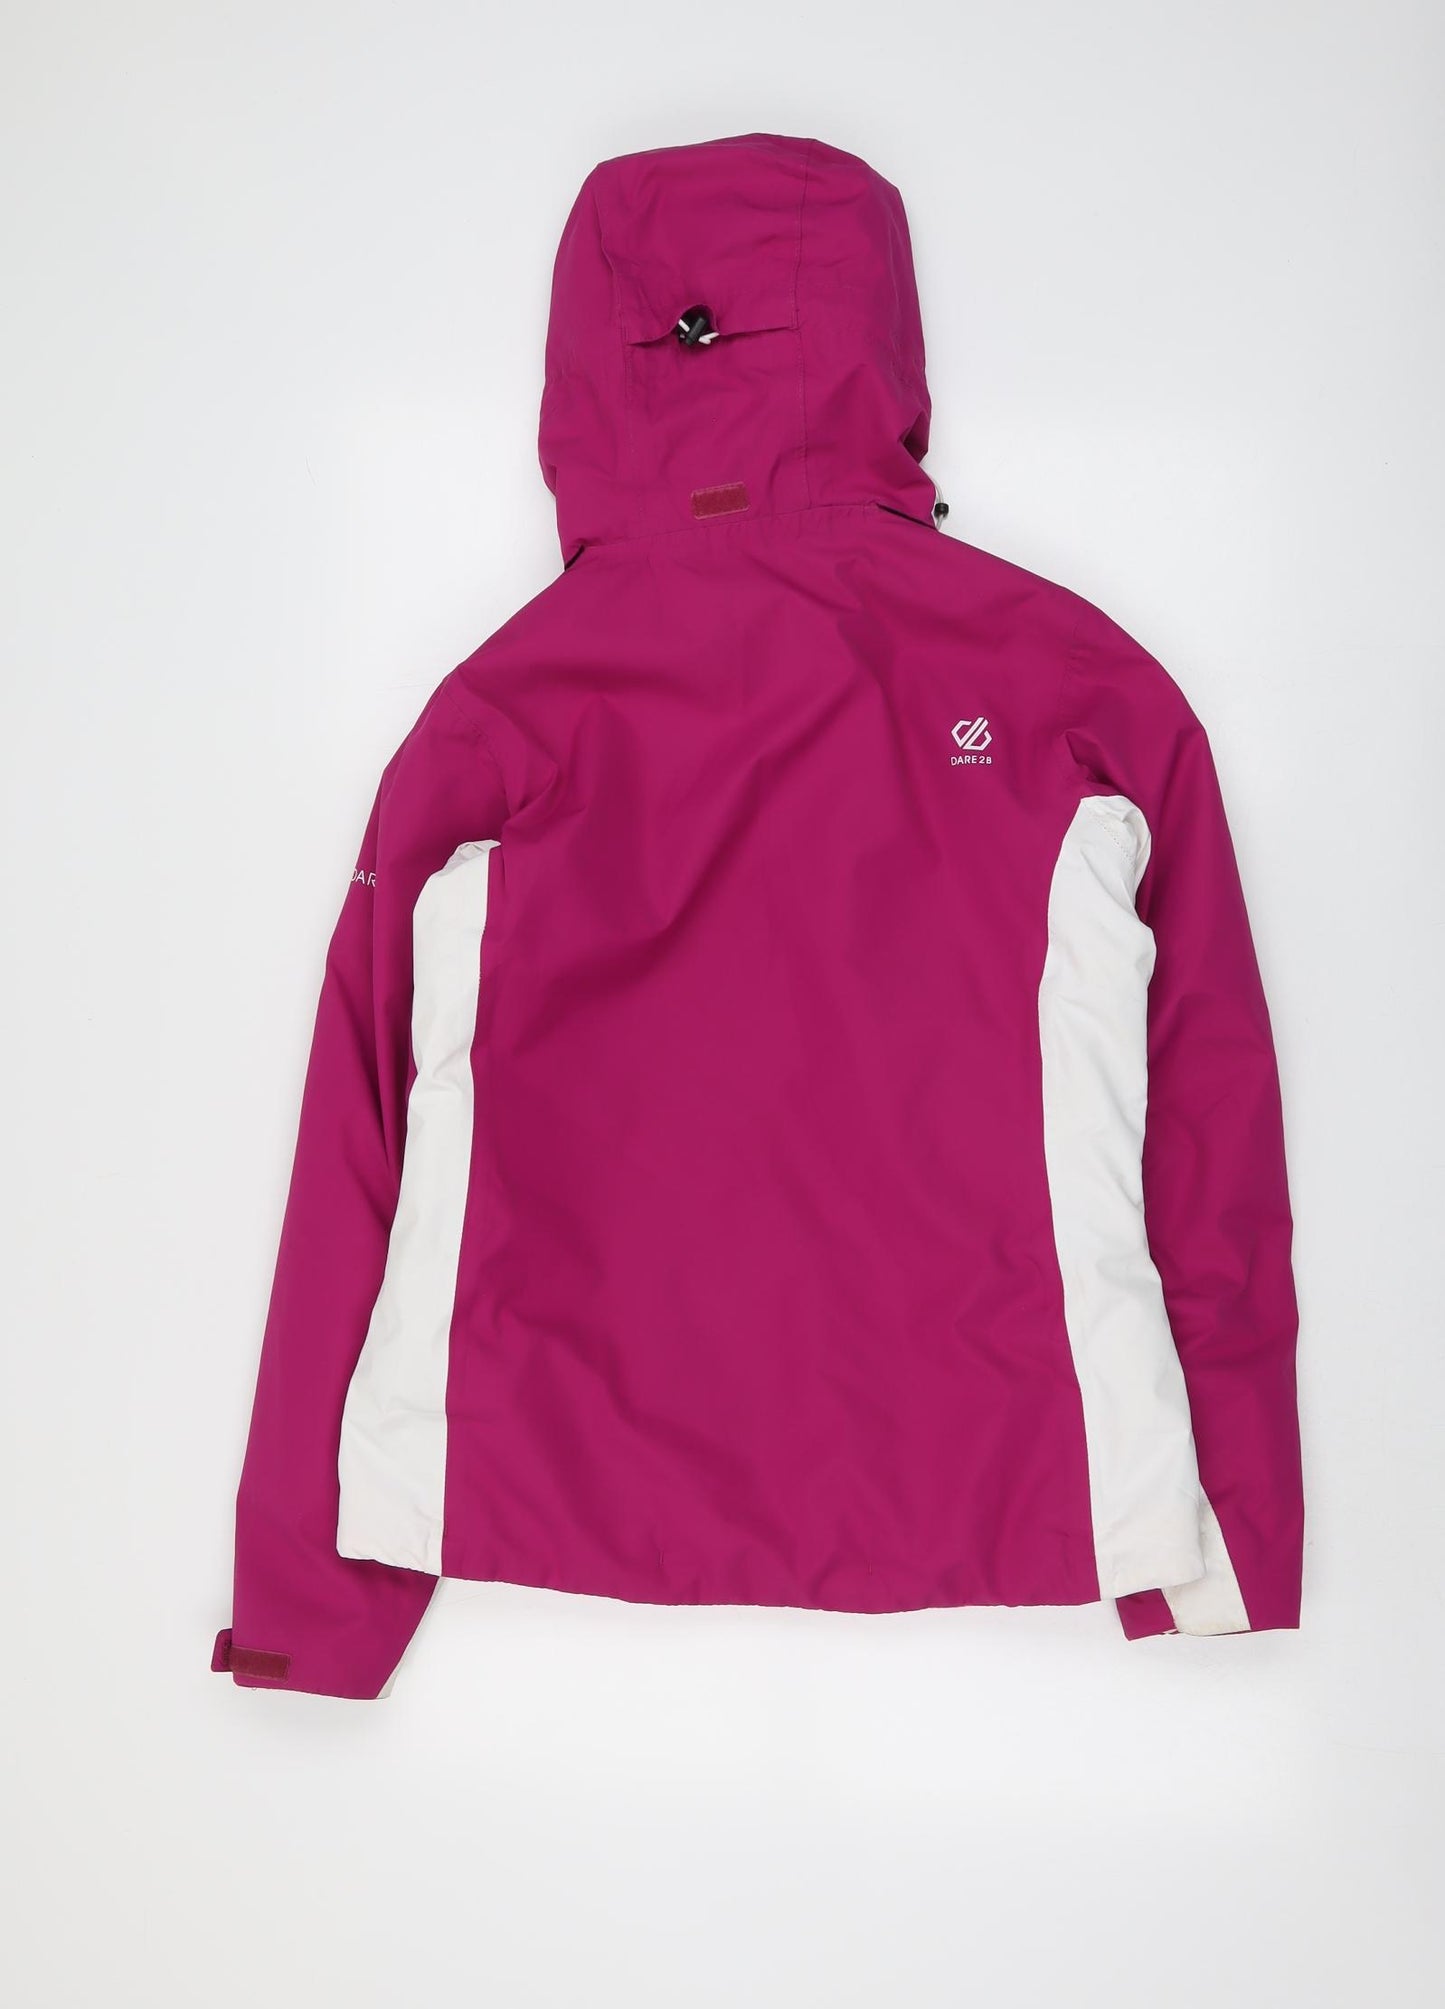 Dare 2B Womens Pink Geometric Windbreaker Jacket Size 10 Zip